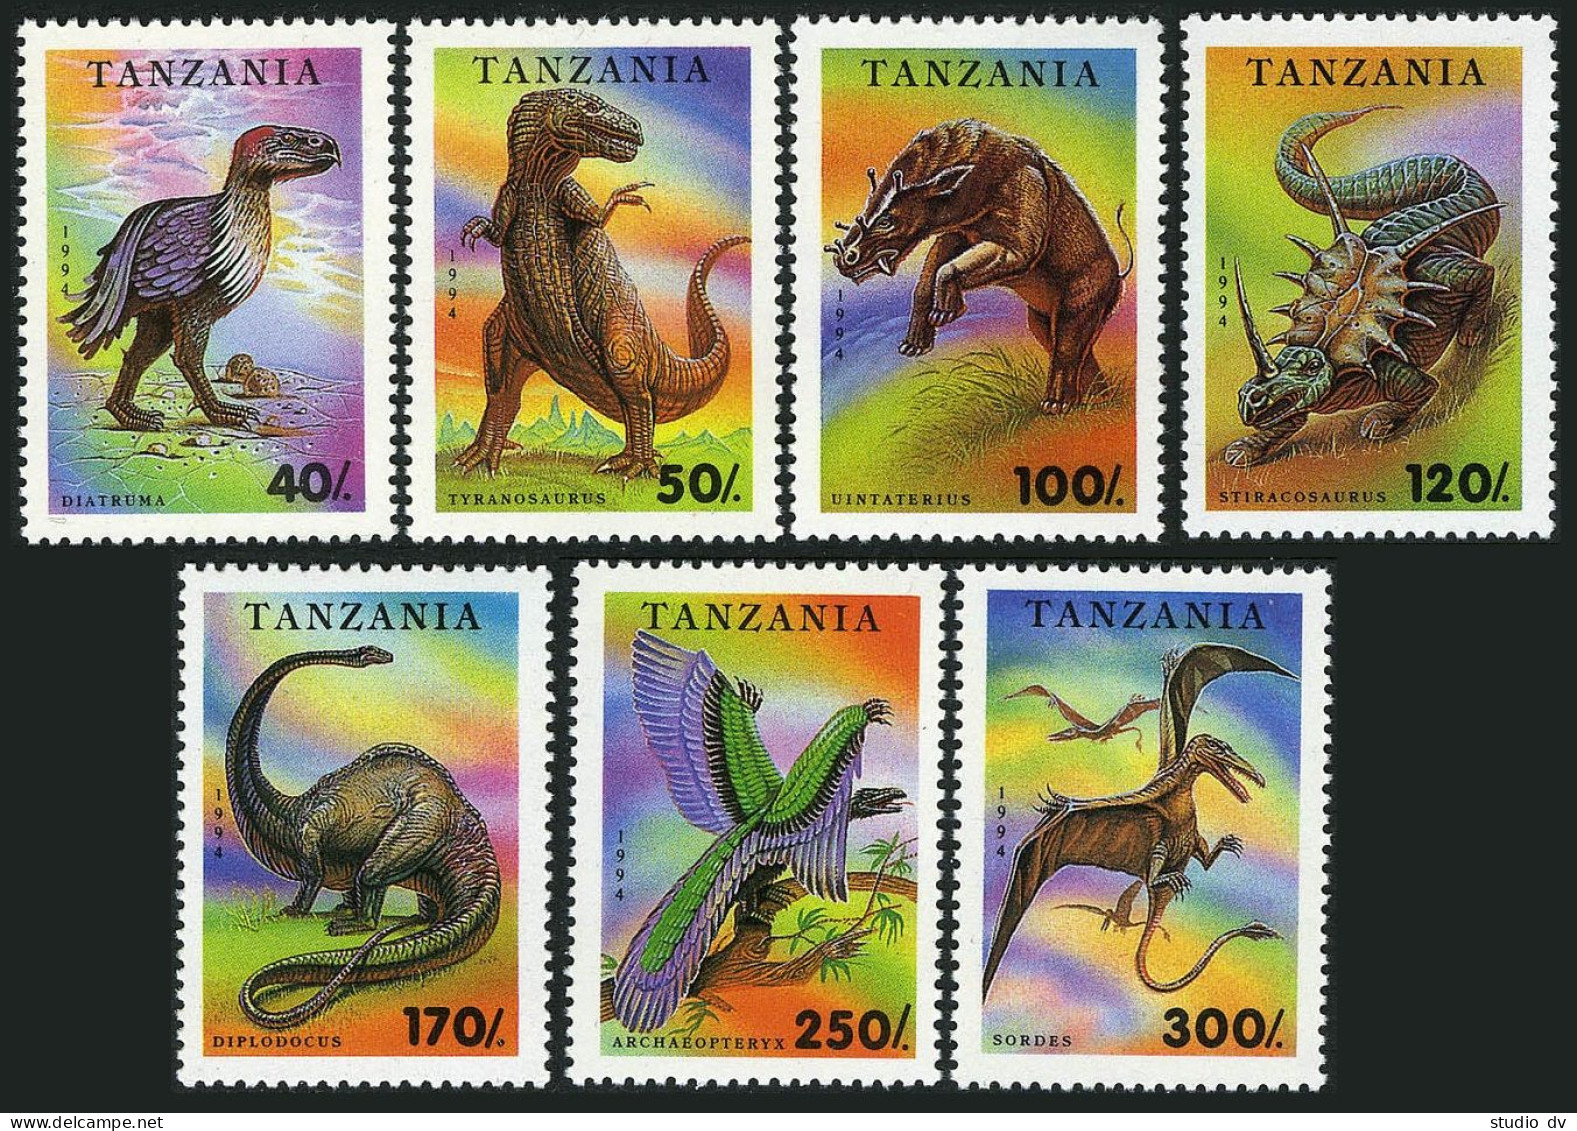 Tanzania 1217-1224,MNH.Michel 1767-1773,Bl.250. Fossil Animals 1994:Dinosaurs. - Tanzanie (1964-...)